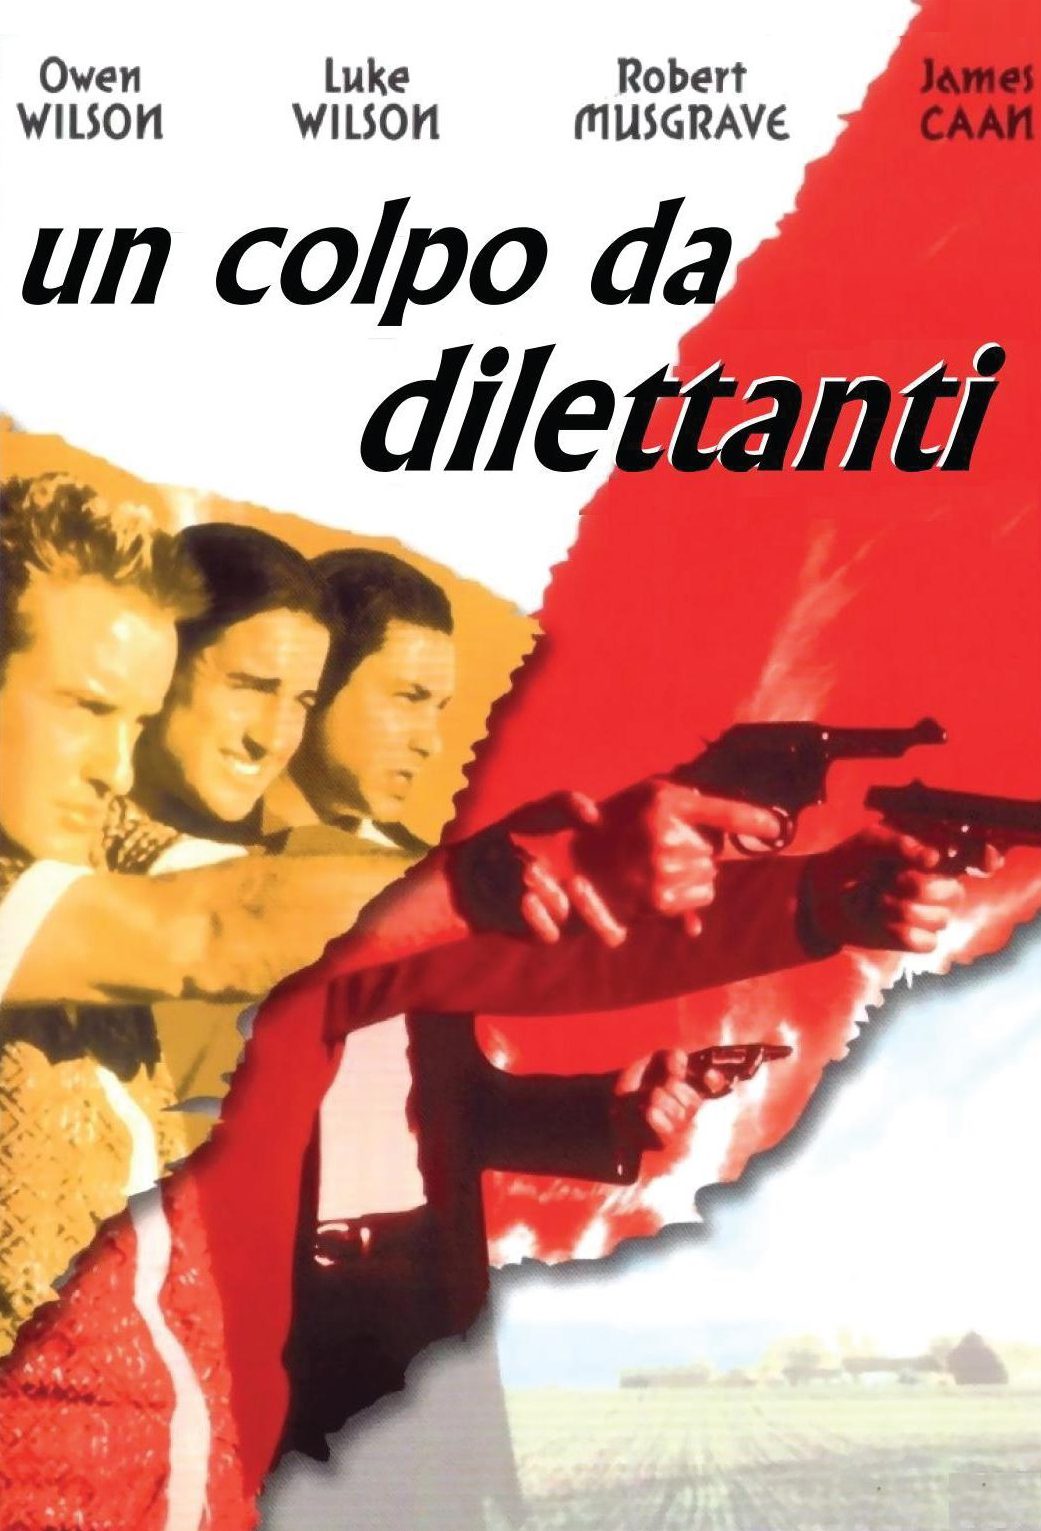 Un colpo da dilettanti [HD] (1996)